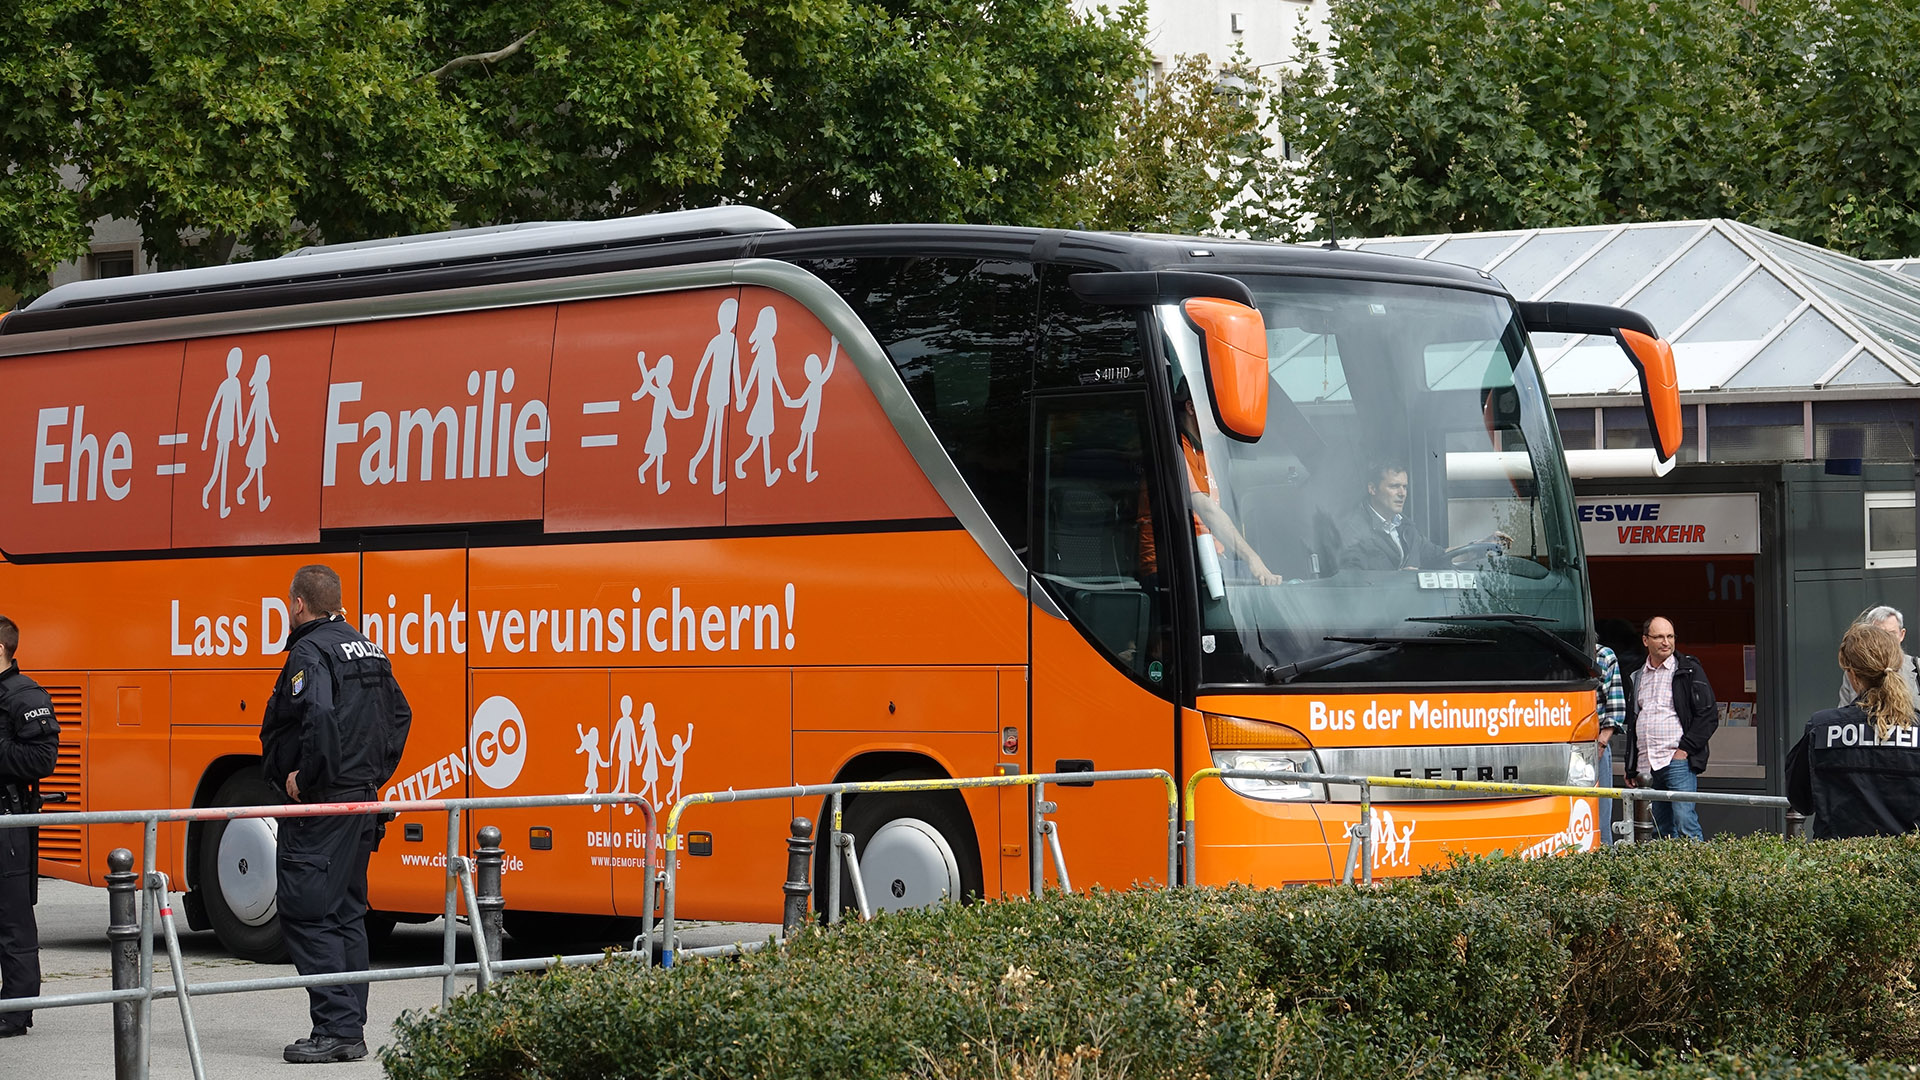 Der „Bus der Meinungsfreiheit“ fuhr am Samstag auf den Luisenplatz in Wiesbaden